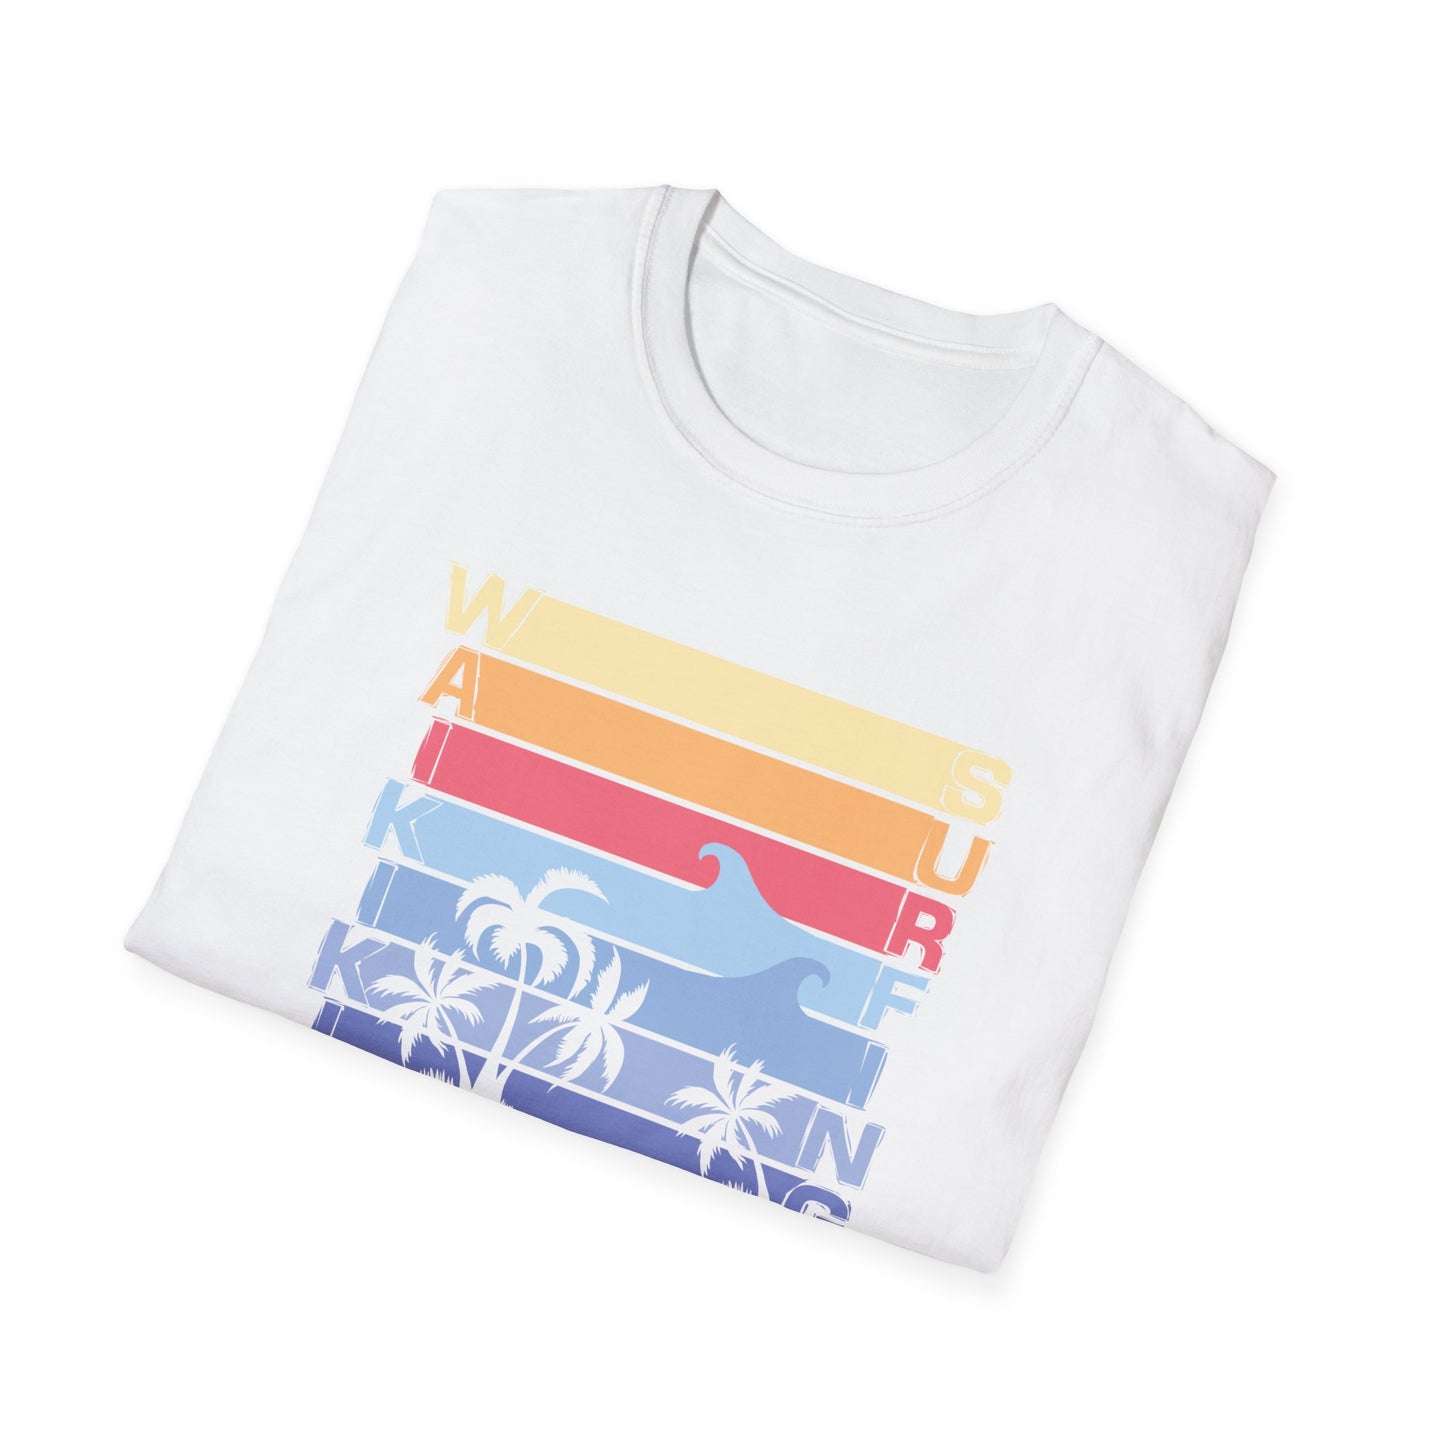 Waikiki Surfing T- Shirt